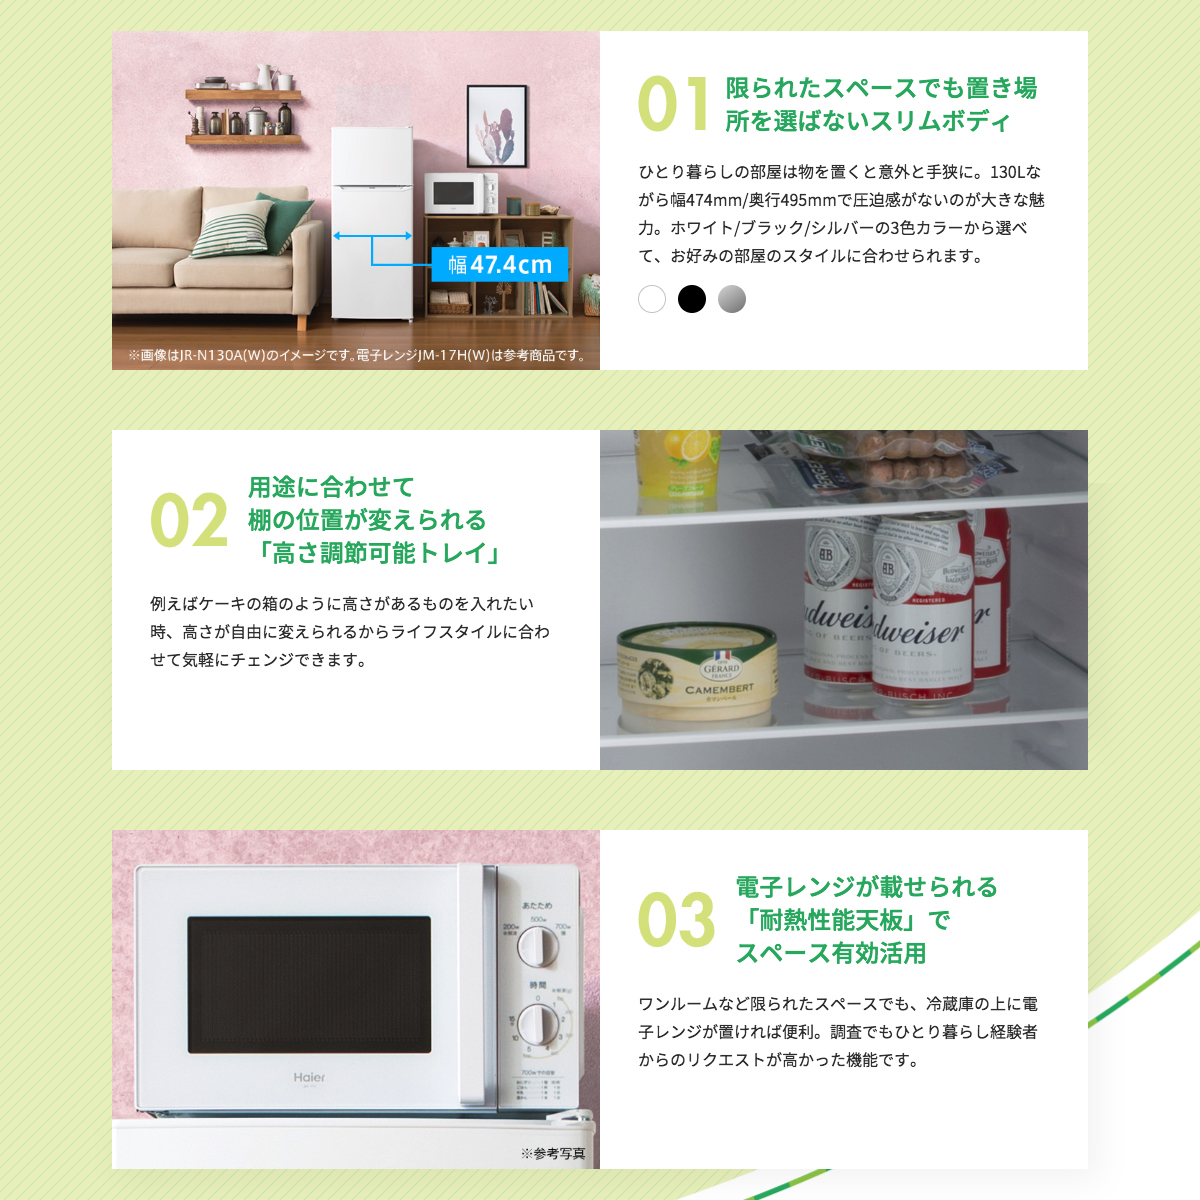 【楽天市場】新生活 一人暮らし 家電セット 冷蔵庫 洗濯機 電子レンジ 3点セット 西日本地域専用 ハイアール 2ドア冷蔵庫 ブラック色